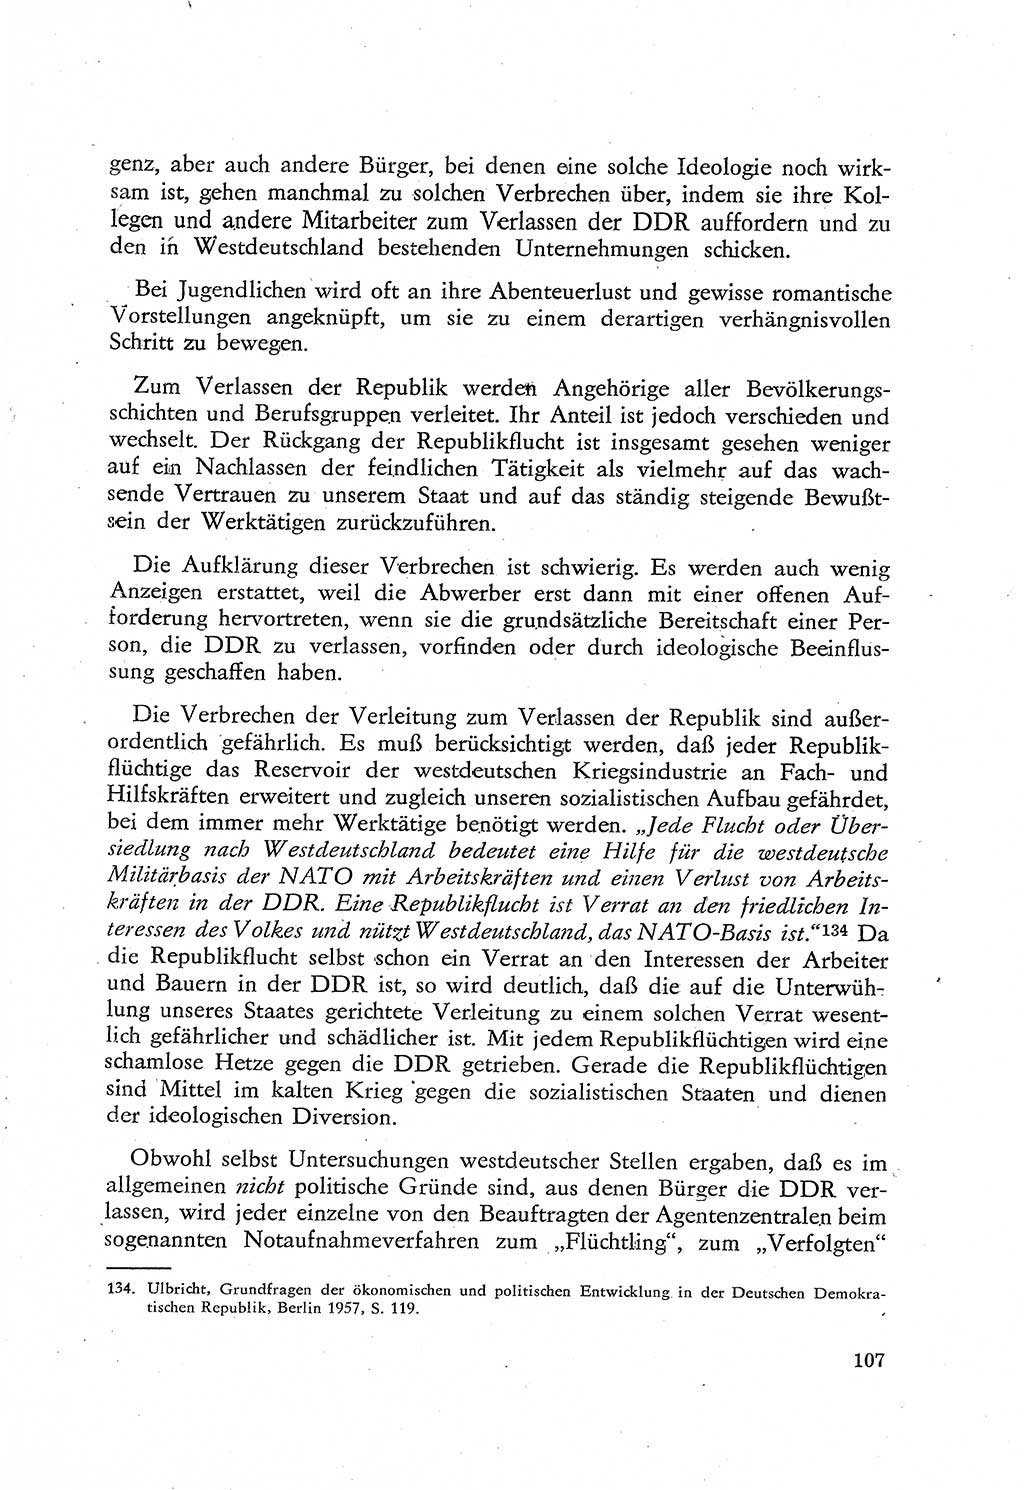 Beiträge zum Strafrecht [Deutsche Demokratische Republik (DDR)], Staatsverbrechen 1959, Seite 107 (Beitr. Strafr. DDR St.-Verbr. 1959, S. 107)